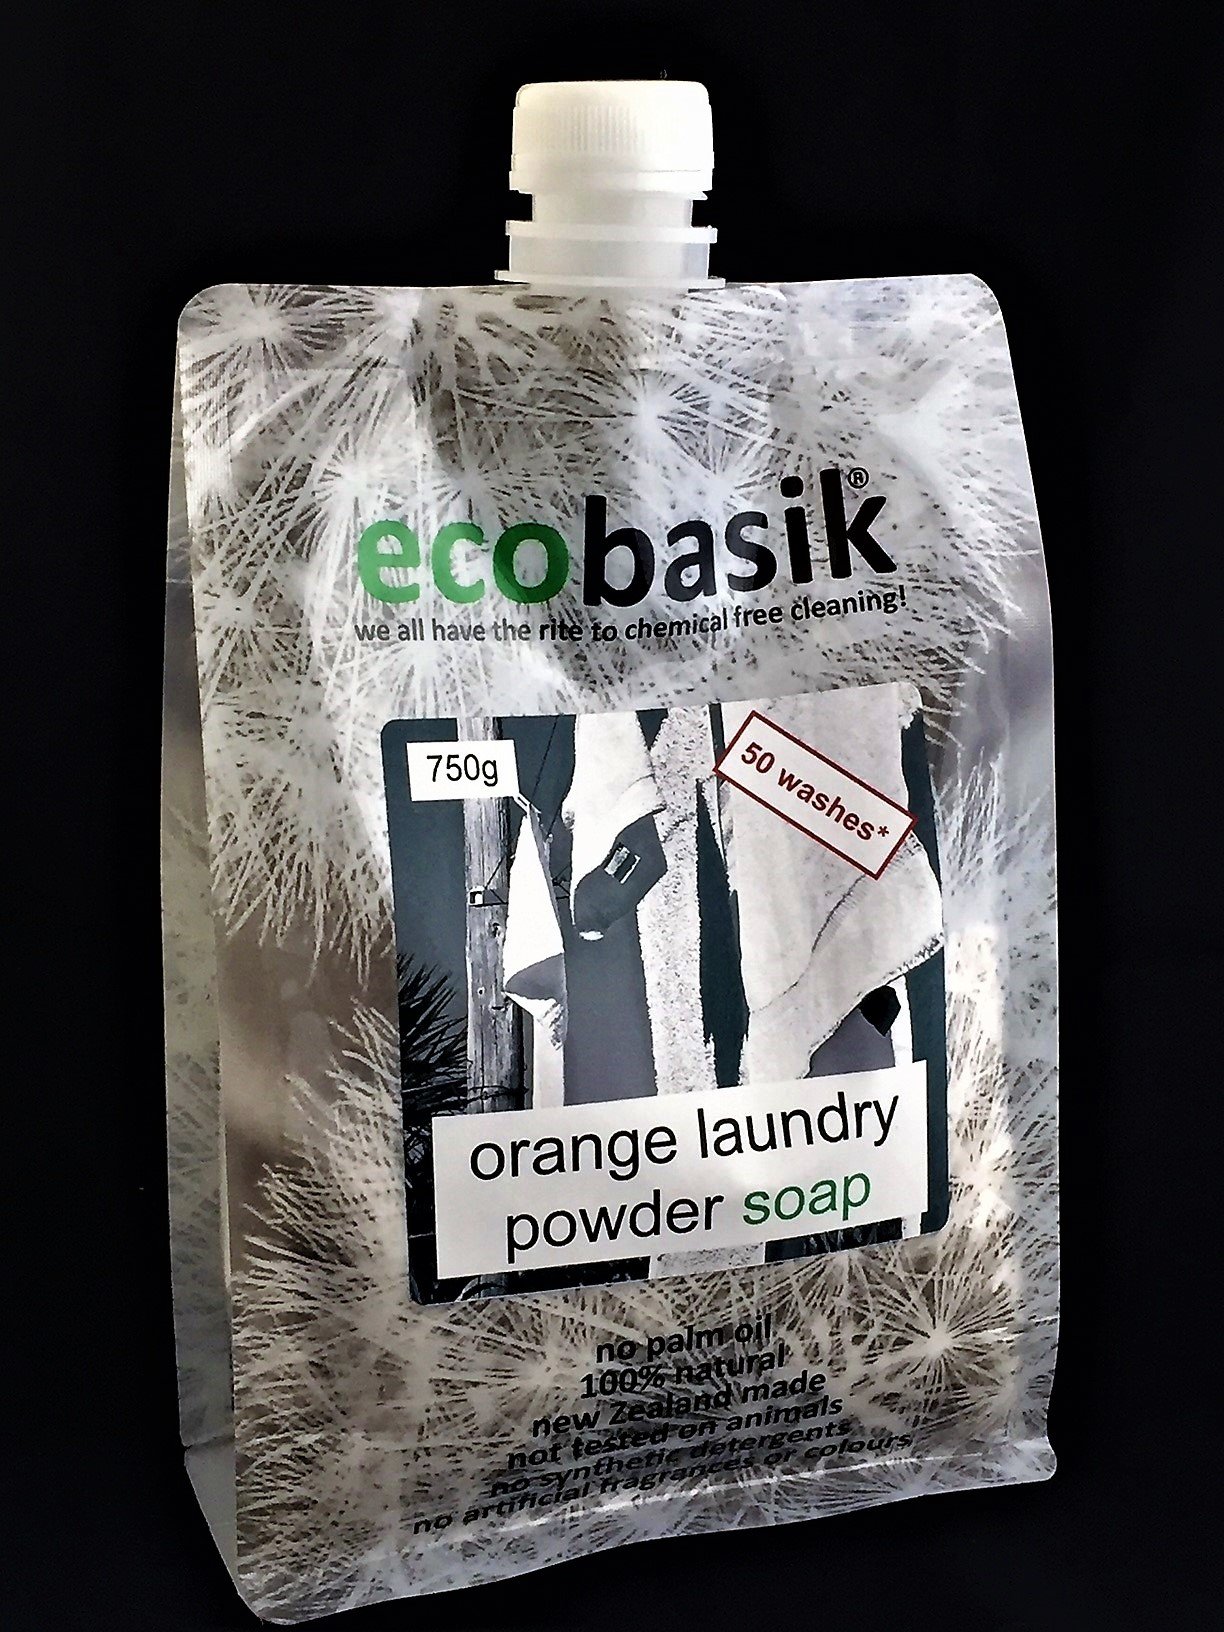 EcoBasik Laundry Powder Soap Orange 750g